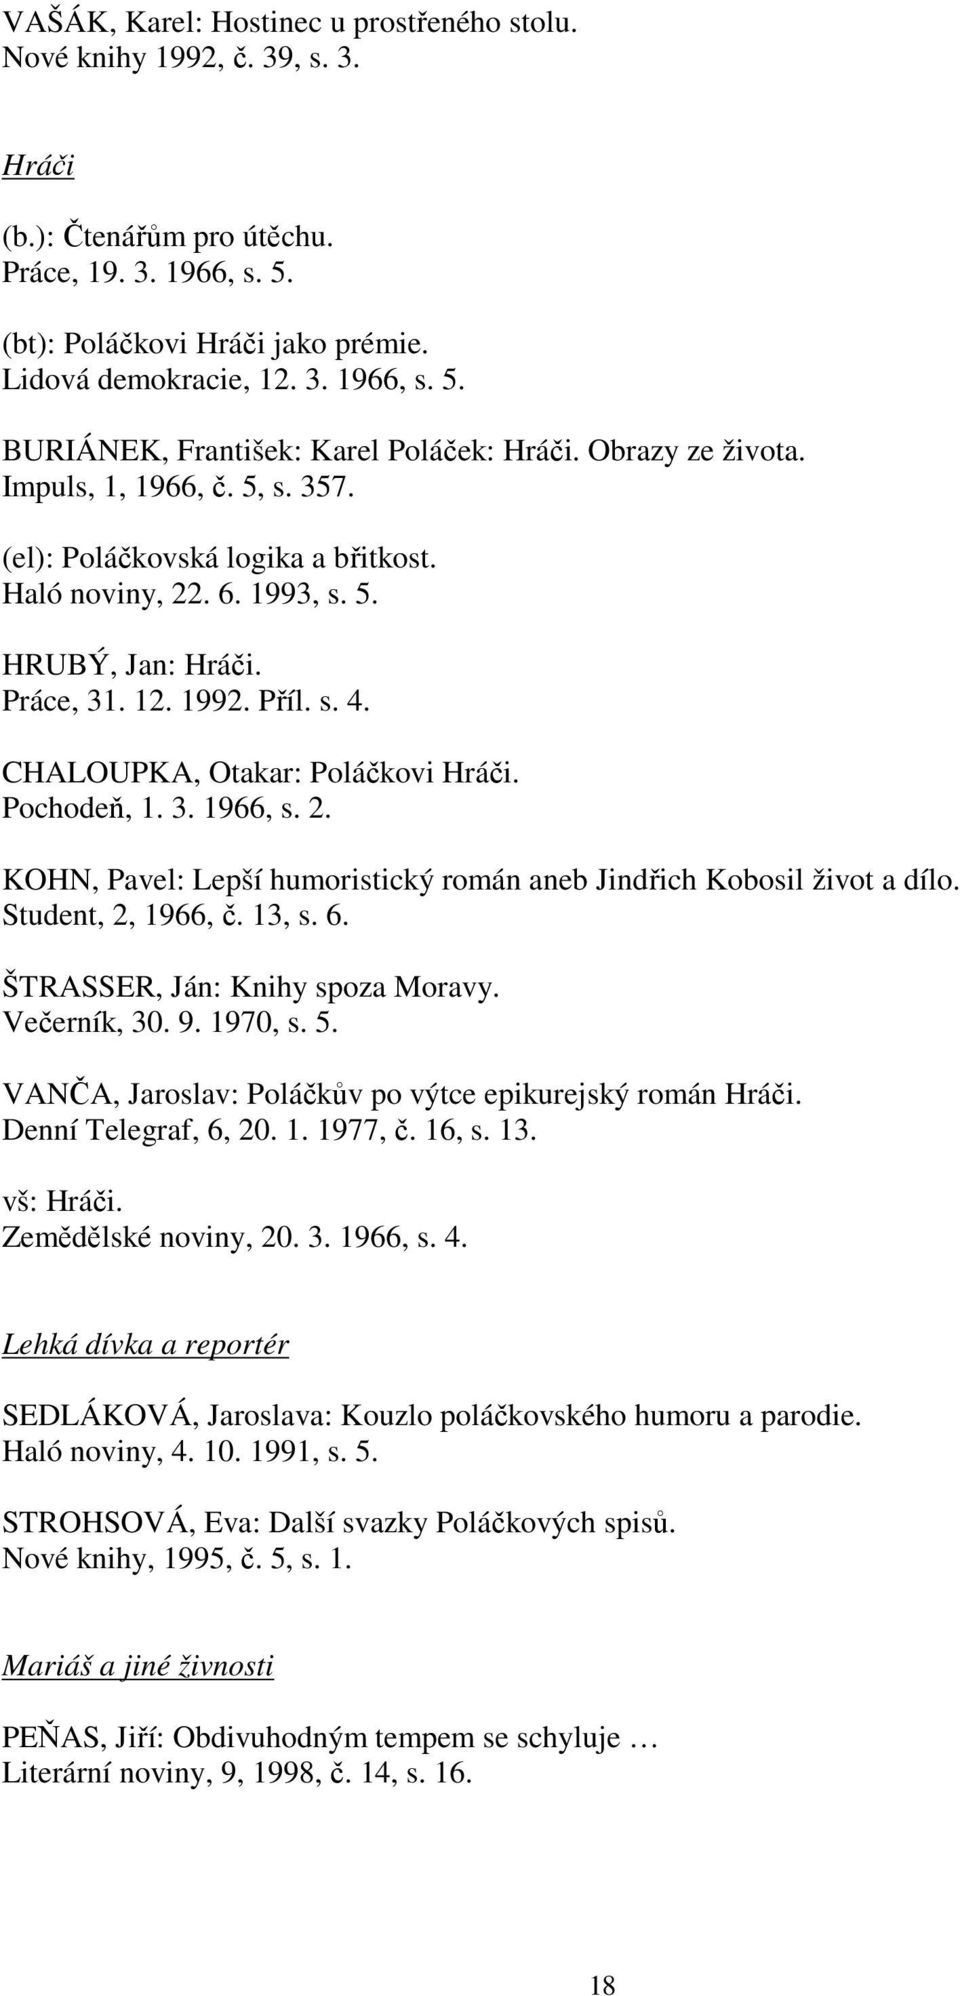 CHALOUPKA, Otakar: Poláčkovi Hráči. Pochodeň, 1. 3. 1966, s. 2. KOHN, Pavel: Lepší humoristický román aneb Jindřich Kobosil život a dílo. Student, 2, 1966, č. 13, s. 6.